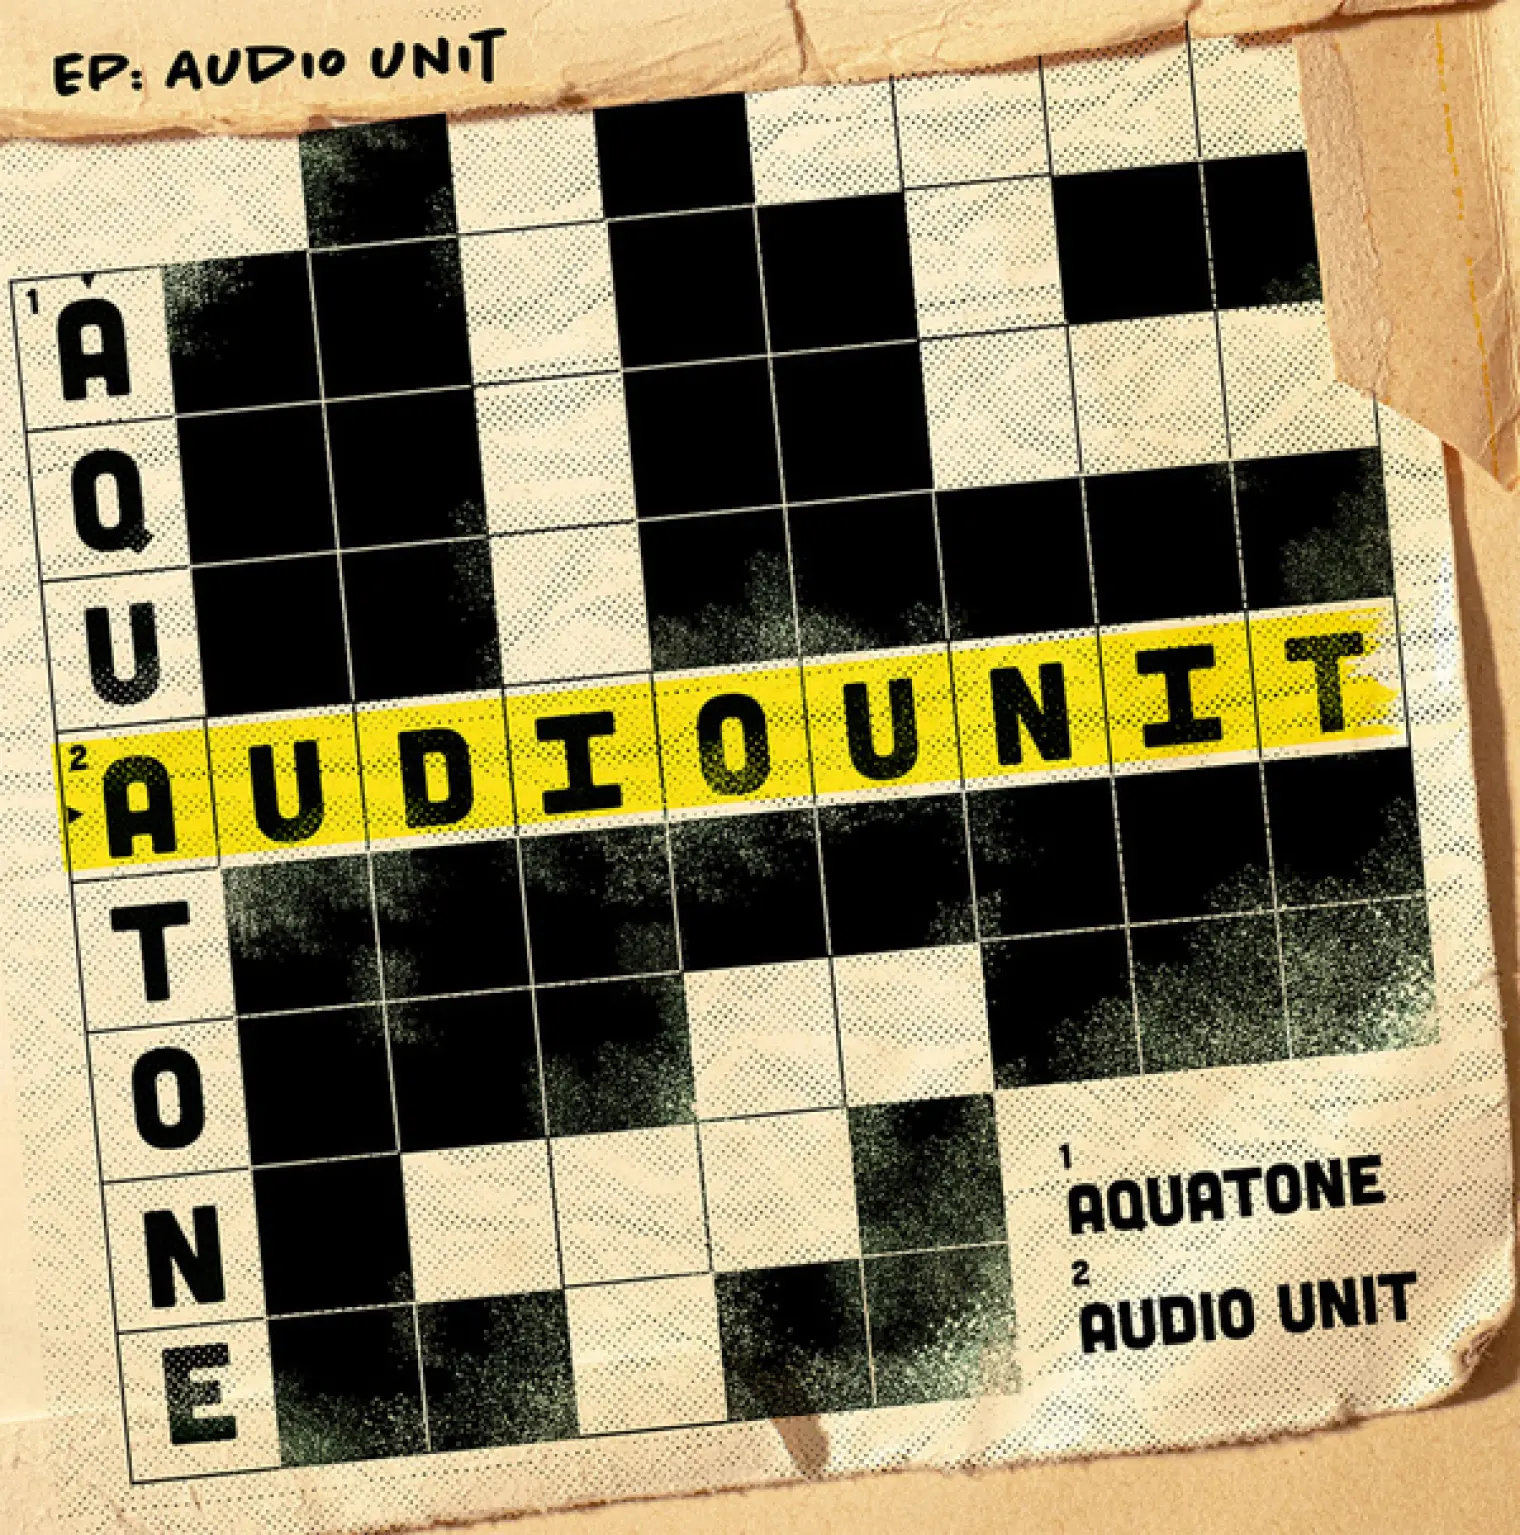 Audio Unit -  Aquatone 